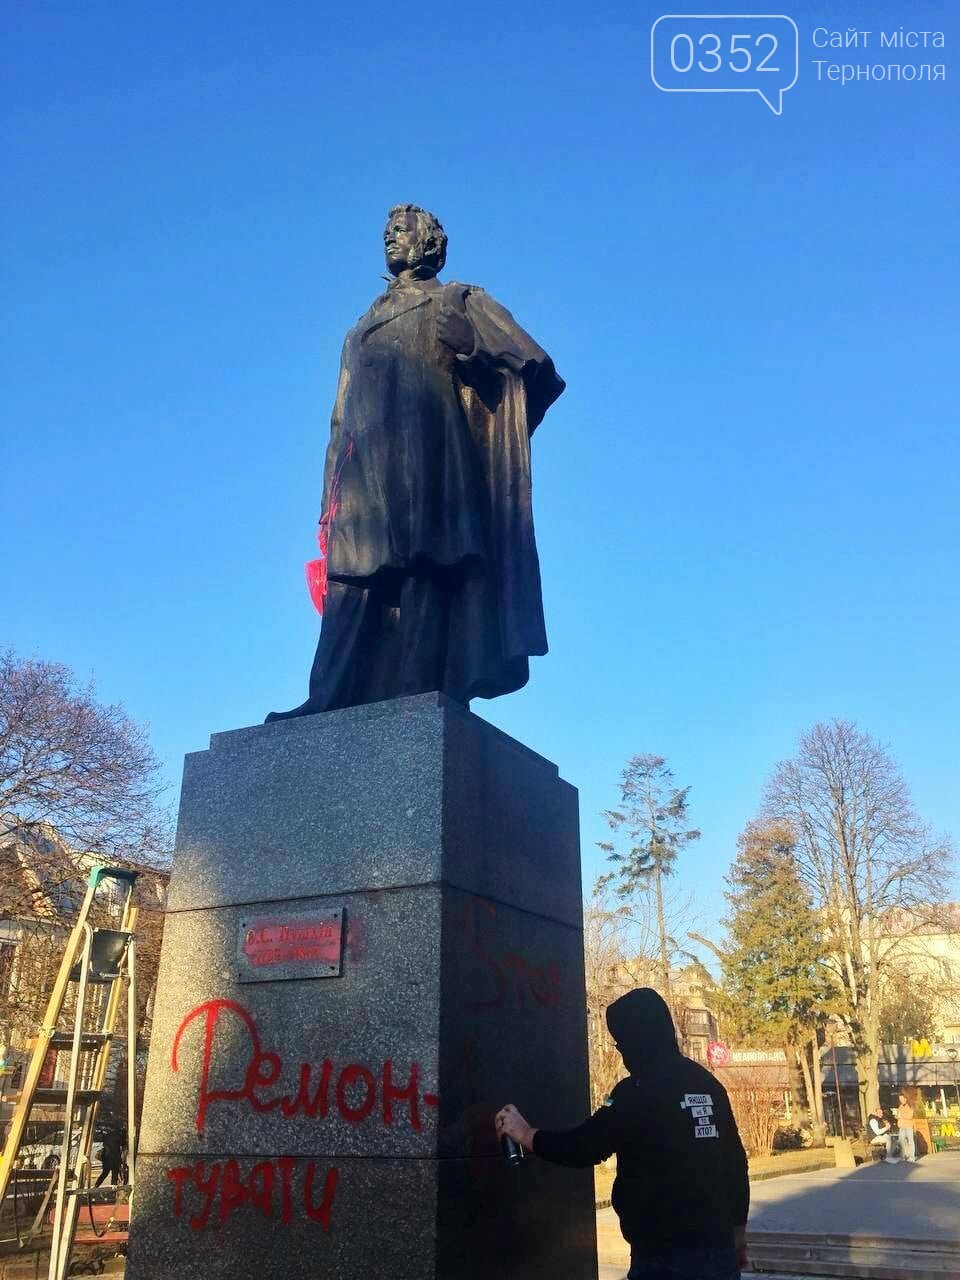 "Чому не переплавити": на пам’ятнику Пушкіну в Тернополі з’явився напис "Демонтувати"